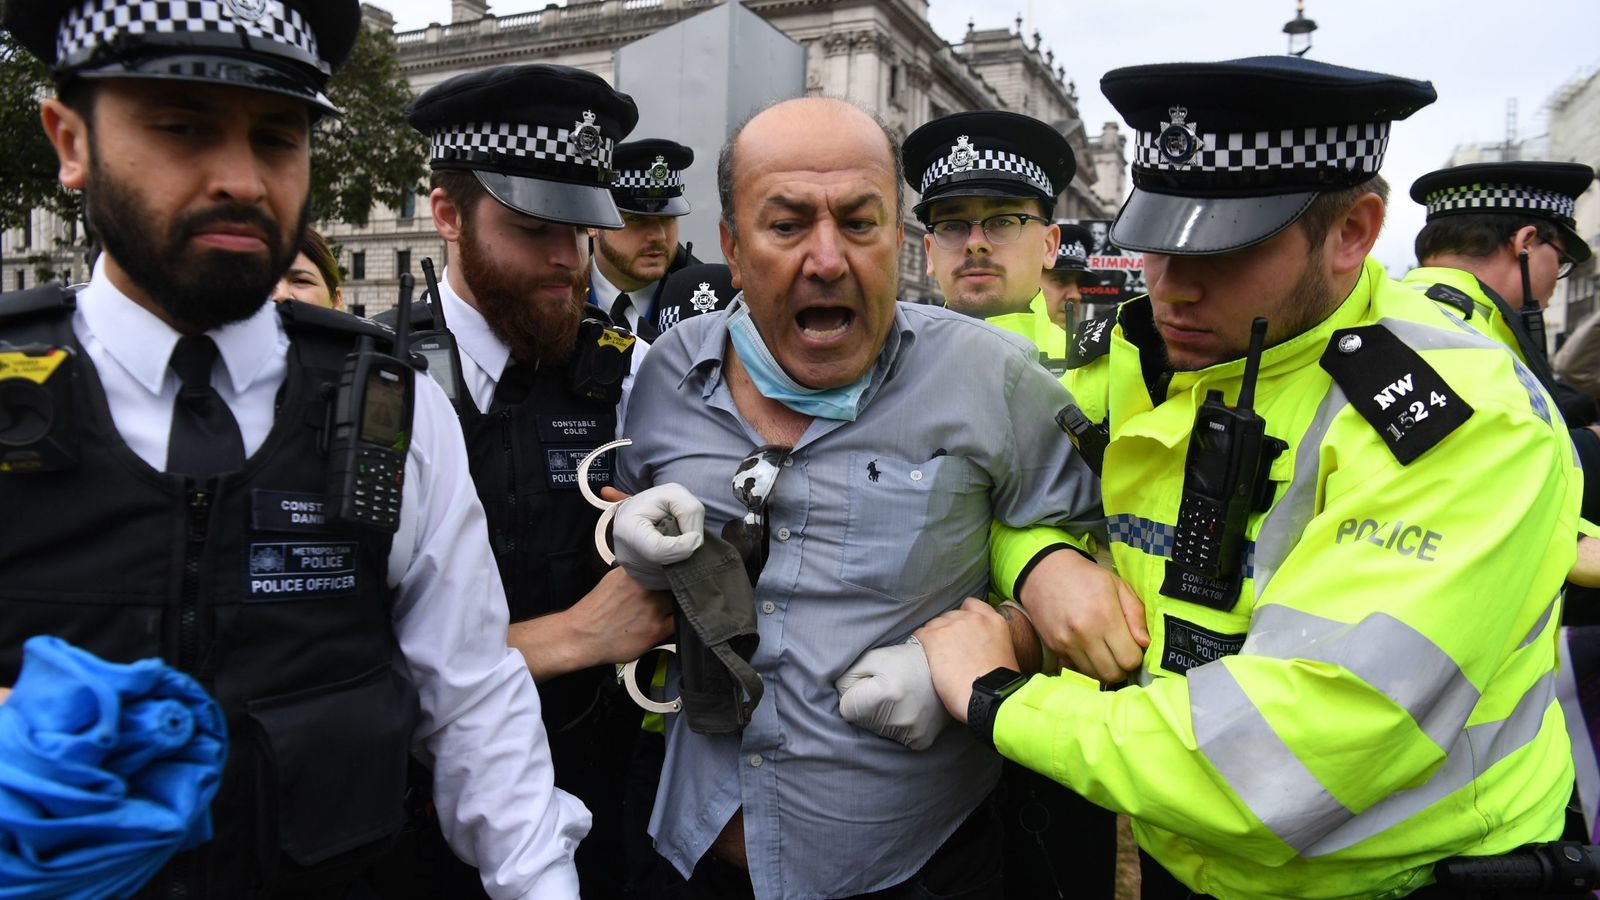 Người biểu tình gây ra vụ việc bị cảnh sát Anh khống chế và bắt giữ. Ảnh: Sky News.